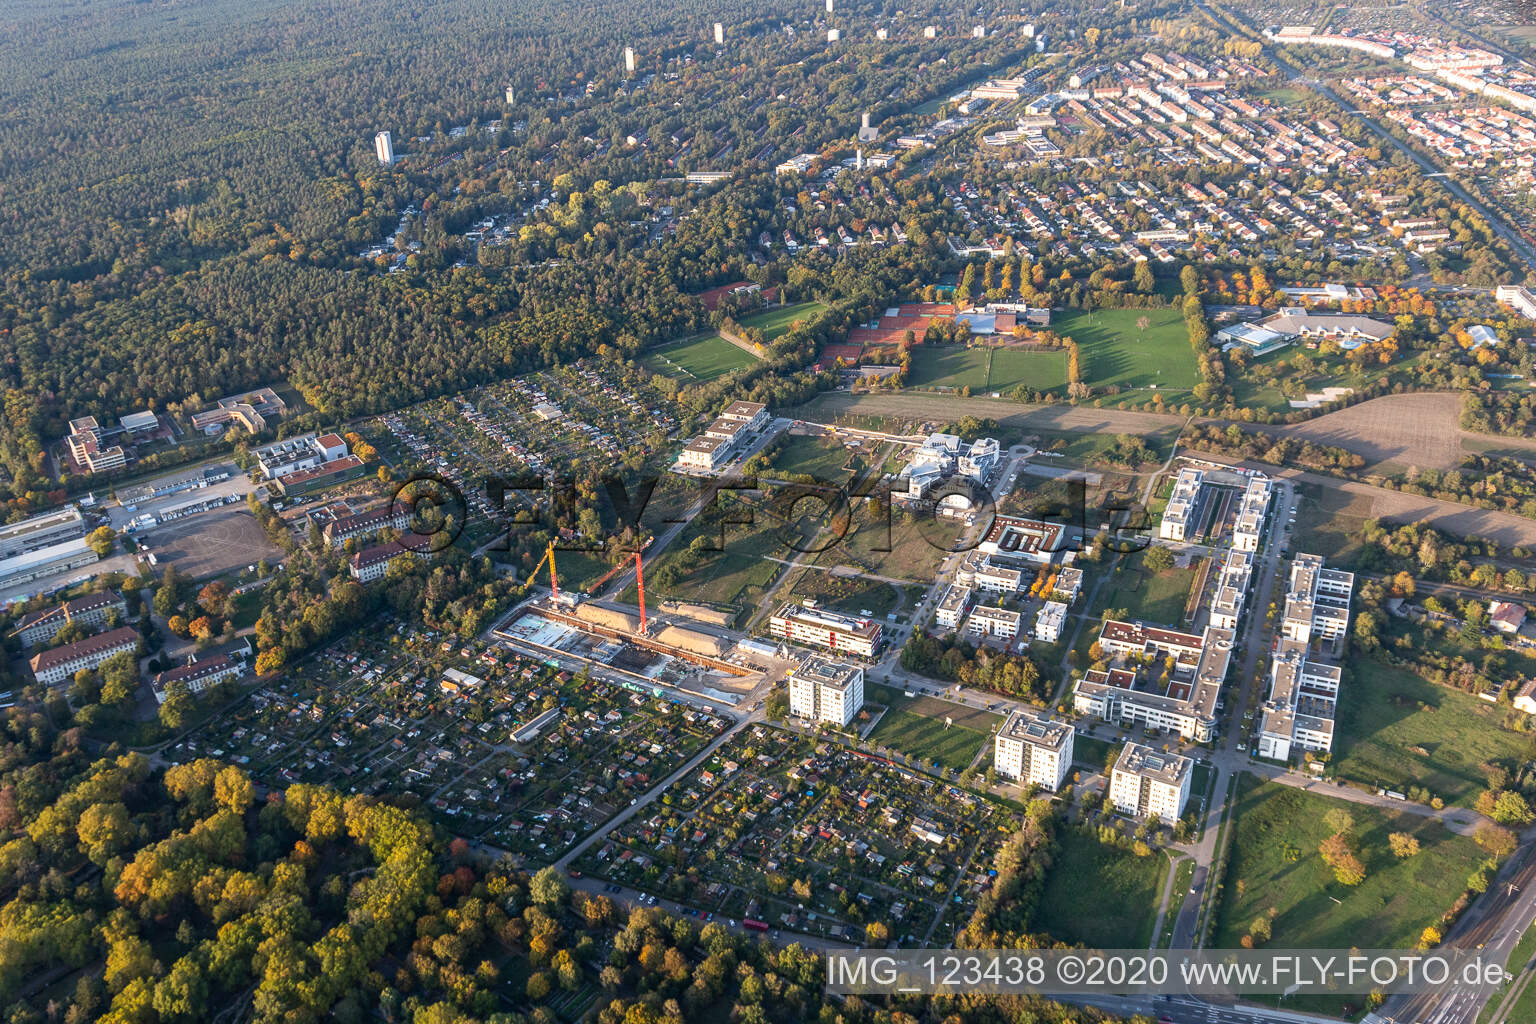 Parc technologique Karlsruhe à le quartier Rintheim in Karlsruhe dans le département Bade-Wurtemberg, Allemagne hors des airs